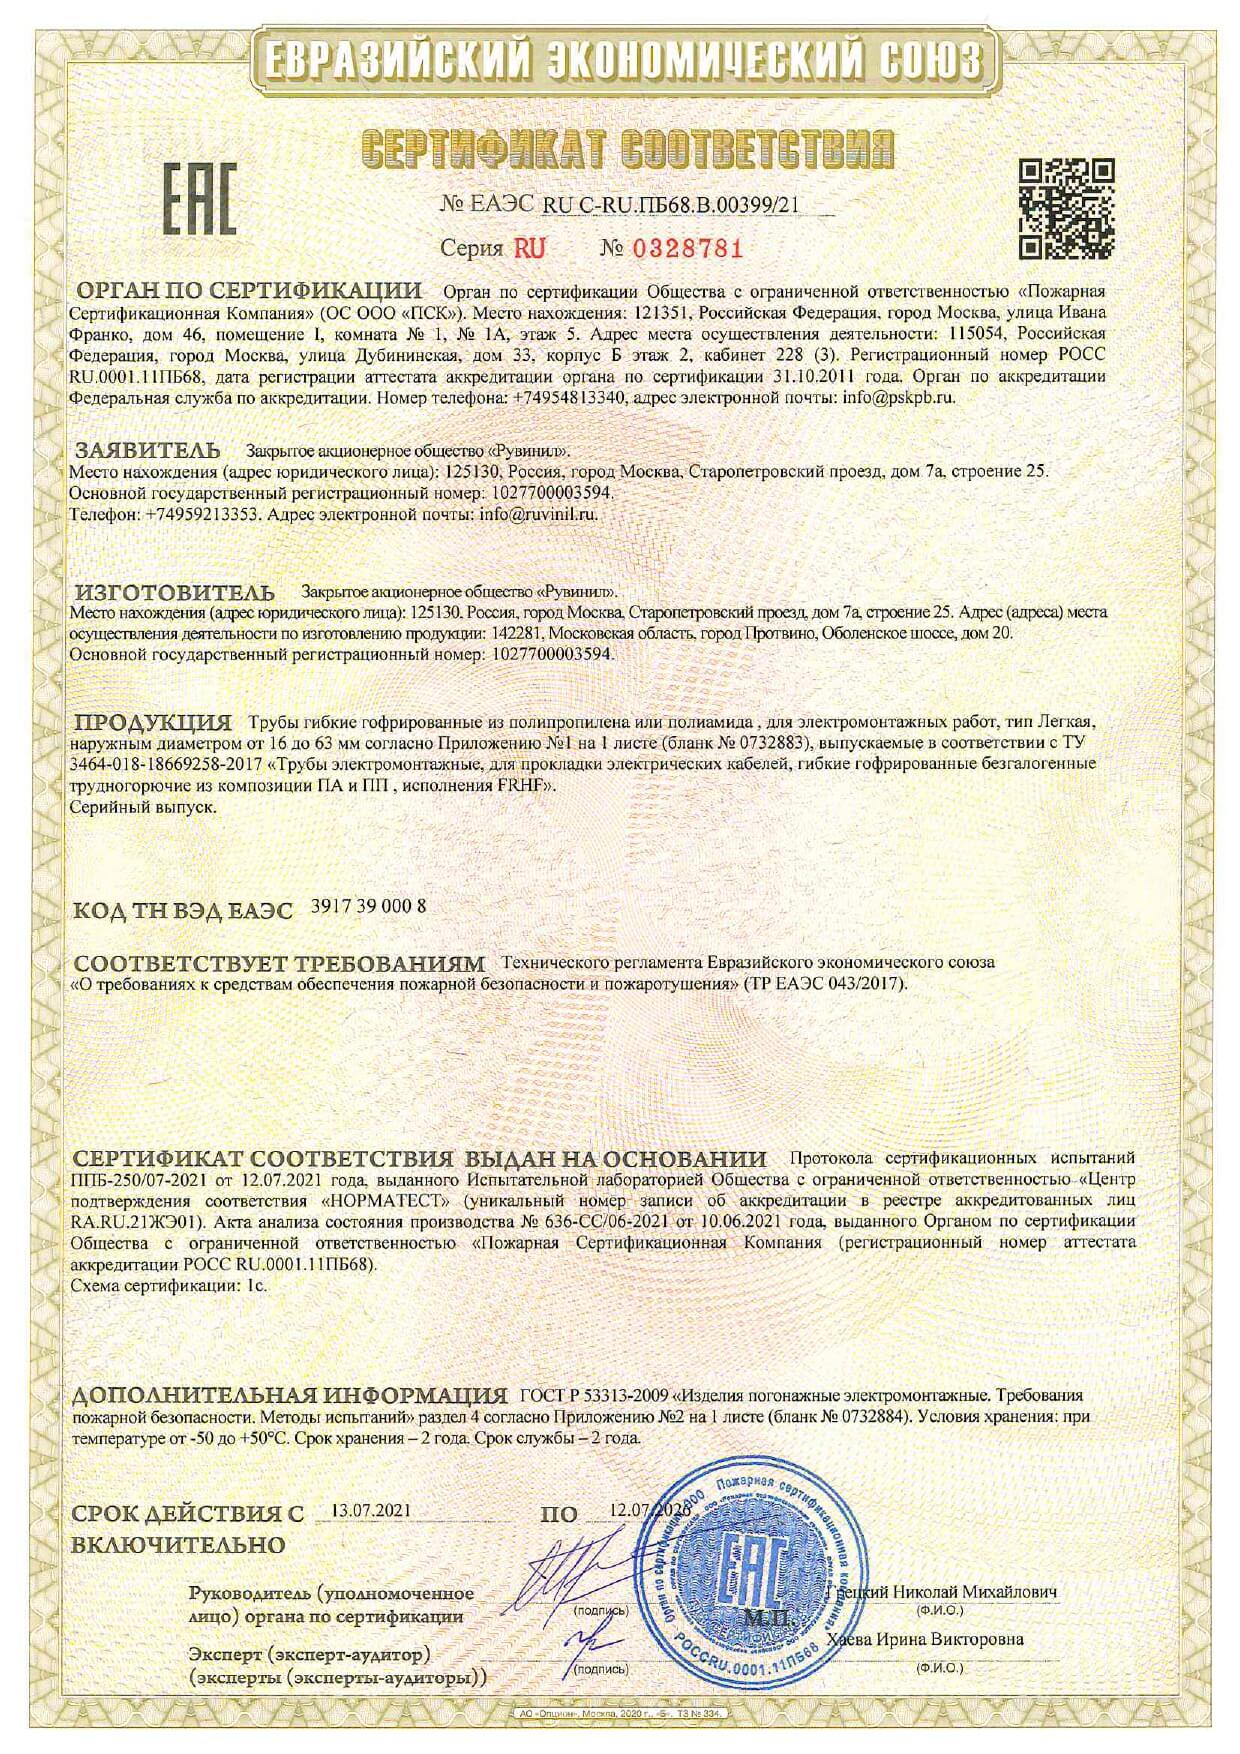 Сертификат соответствия - труба гофрированная ПП или ПА Рувинил